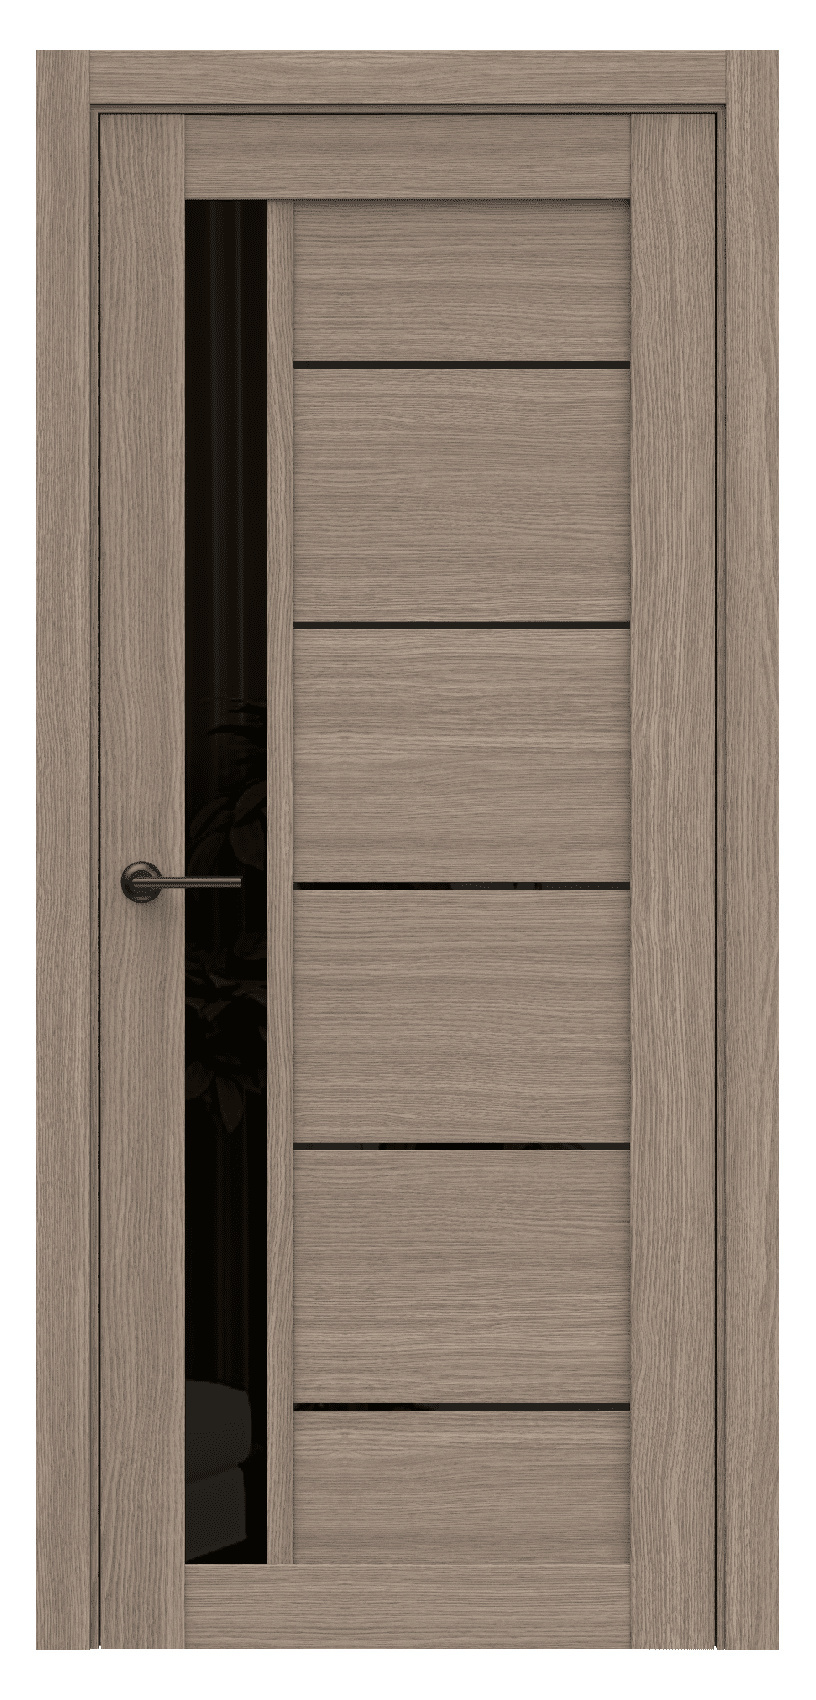 Questdoors Межкомнатная дверь Q61, арт. 17483 - фото №1